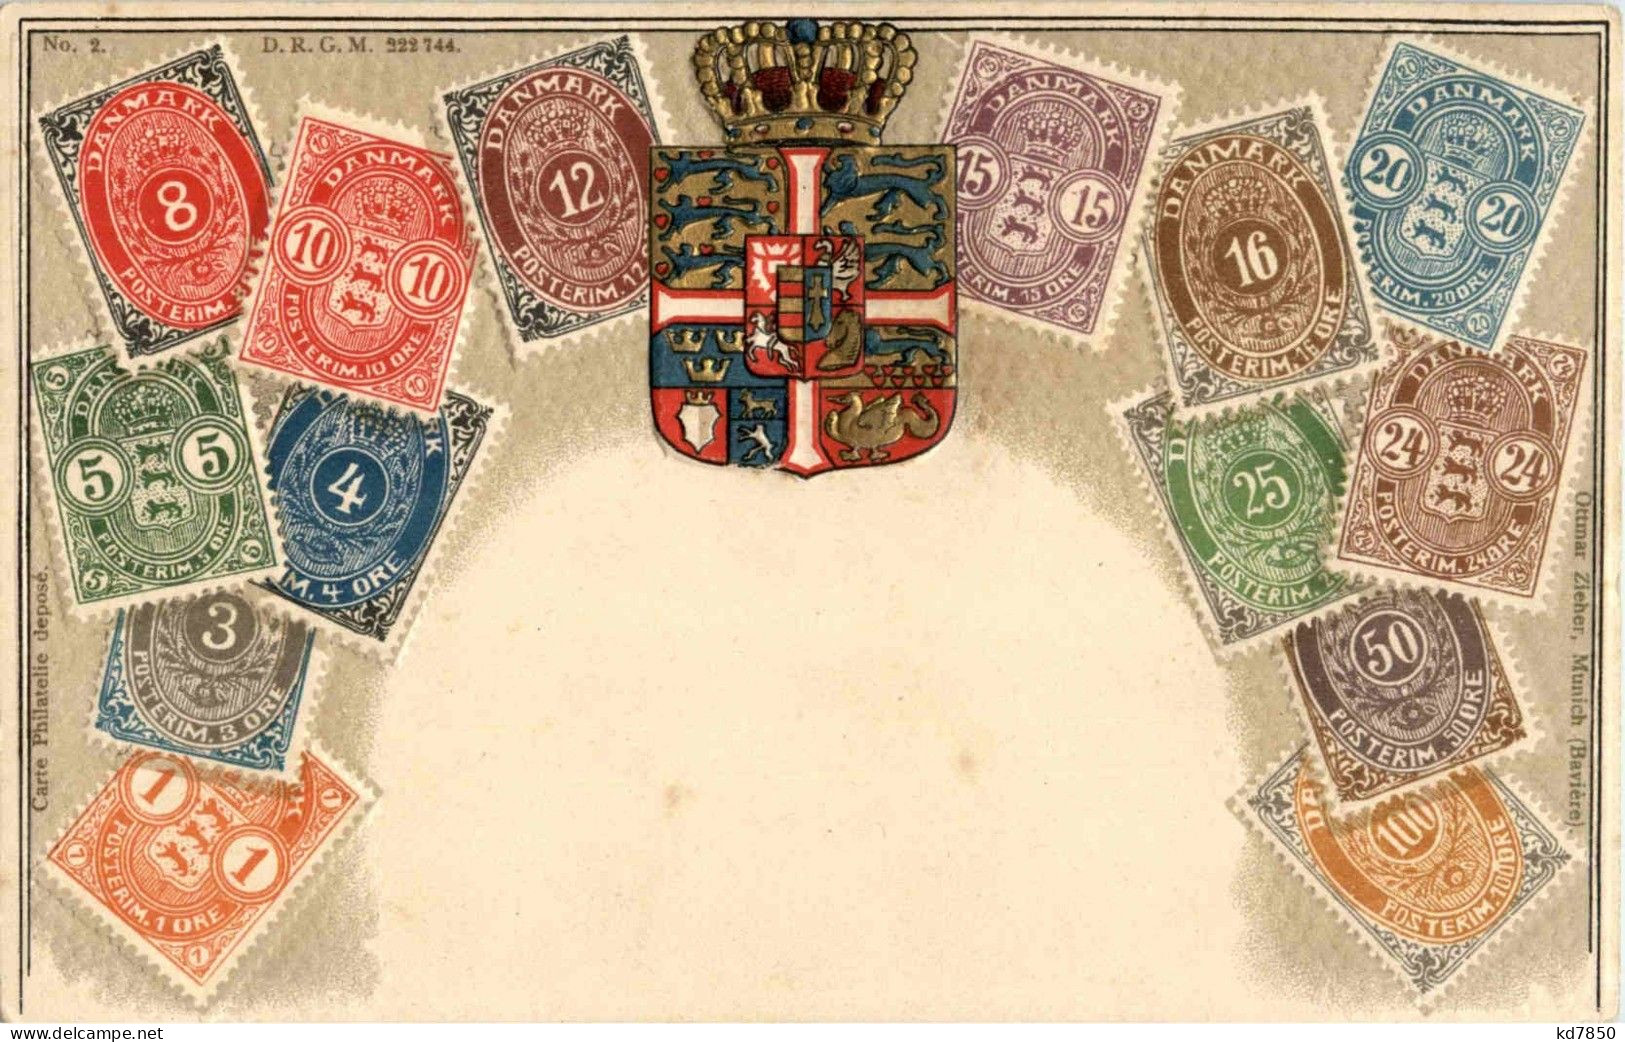 Danmark - Briefmarken - Stamps - Prägekarte - Stamps (pictures)